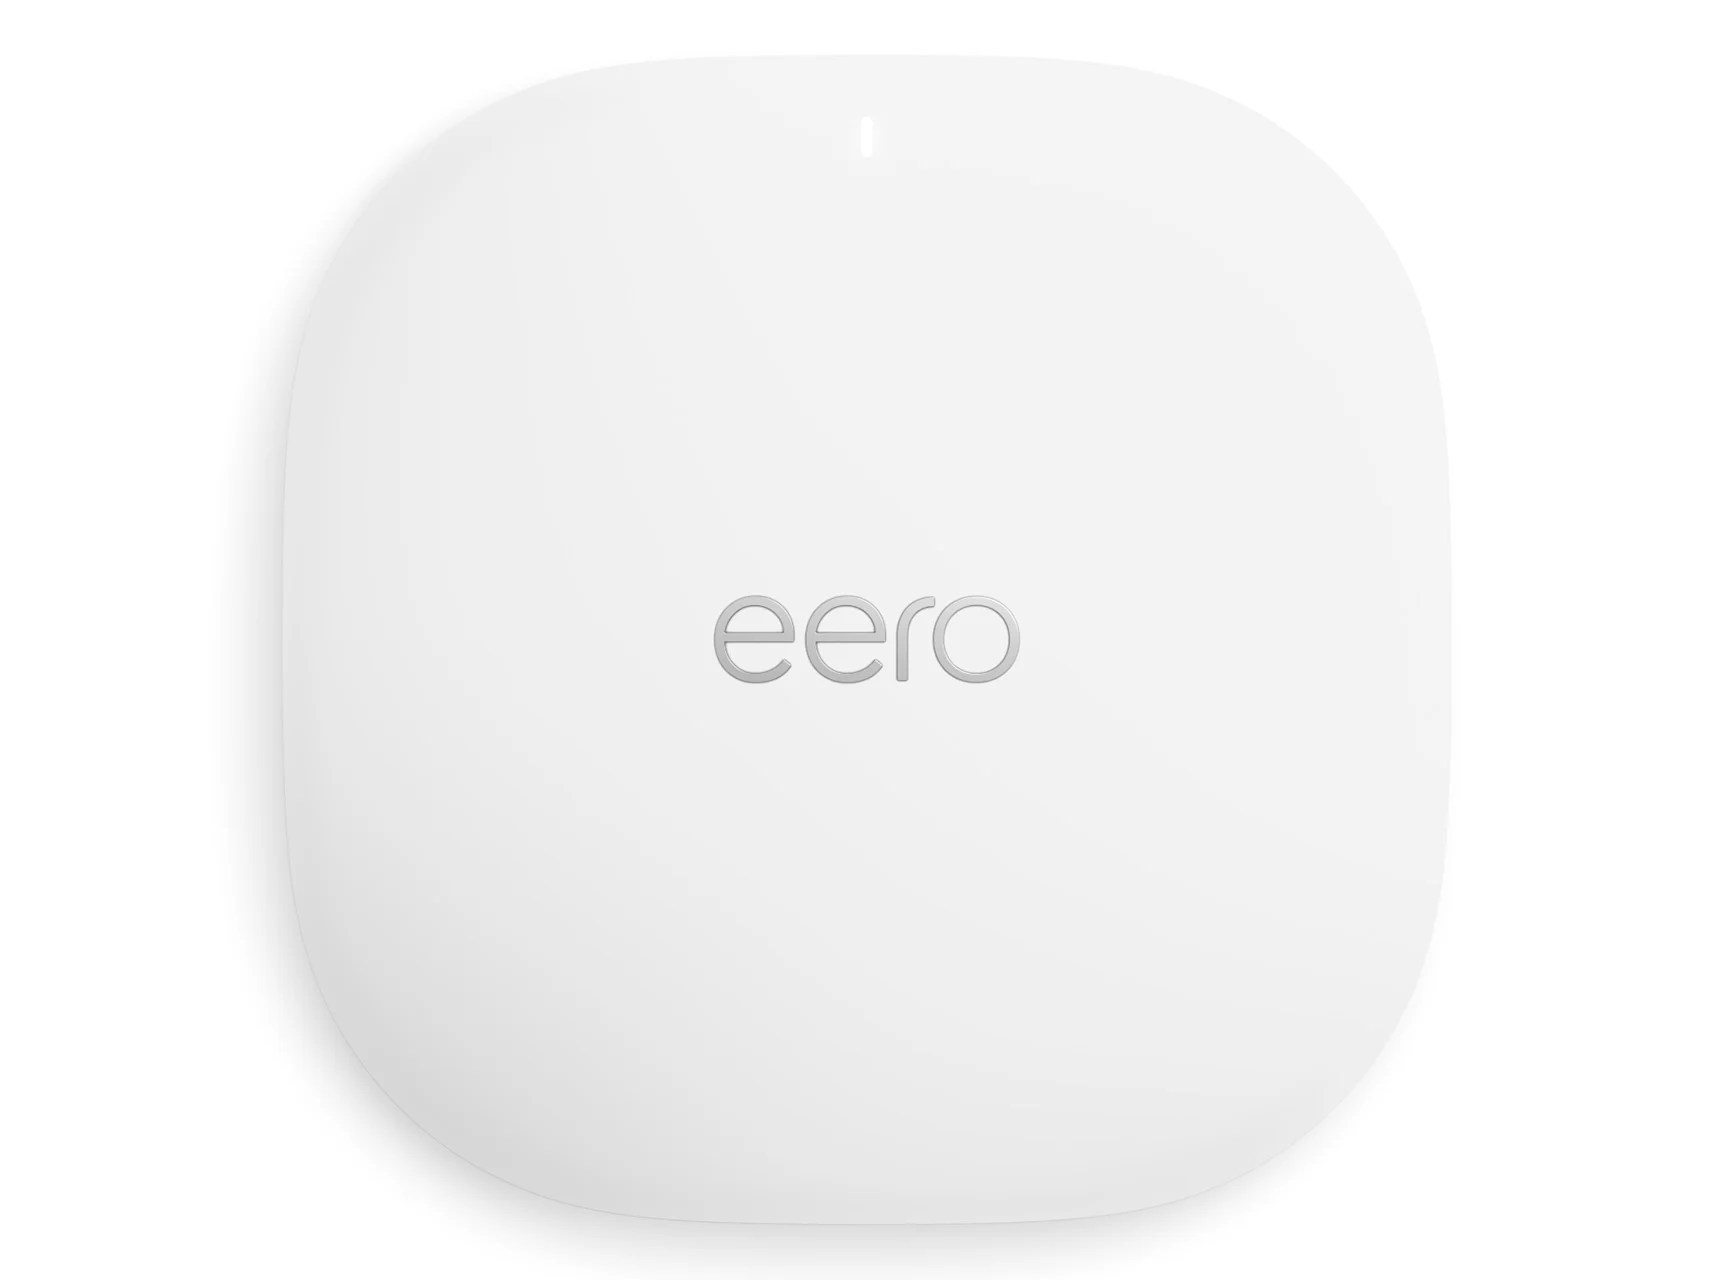 Eero PoE 6 power over Ethernet WiFi router